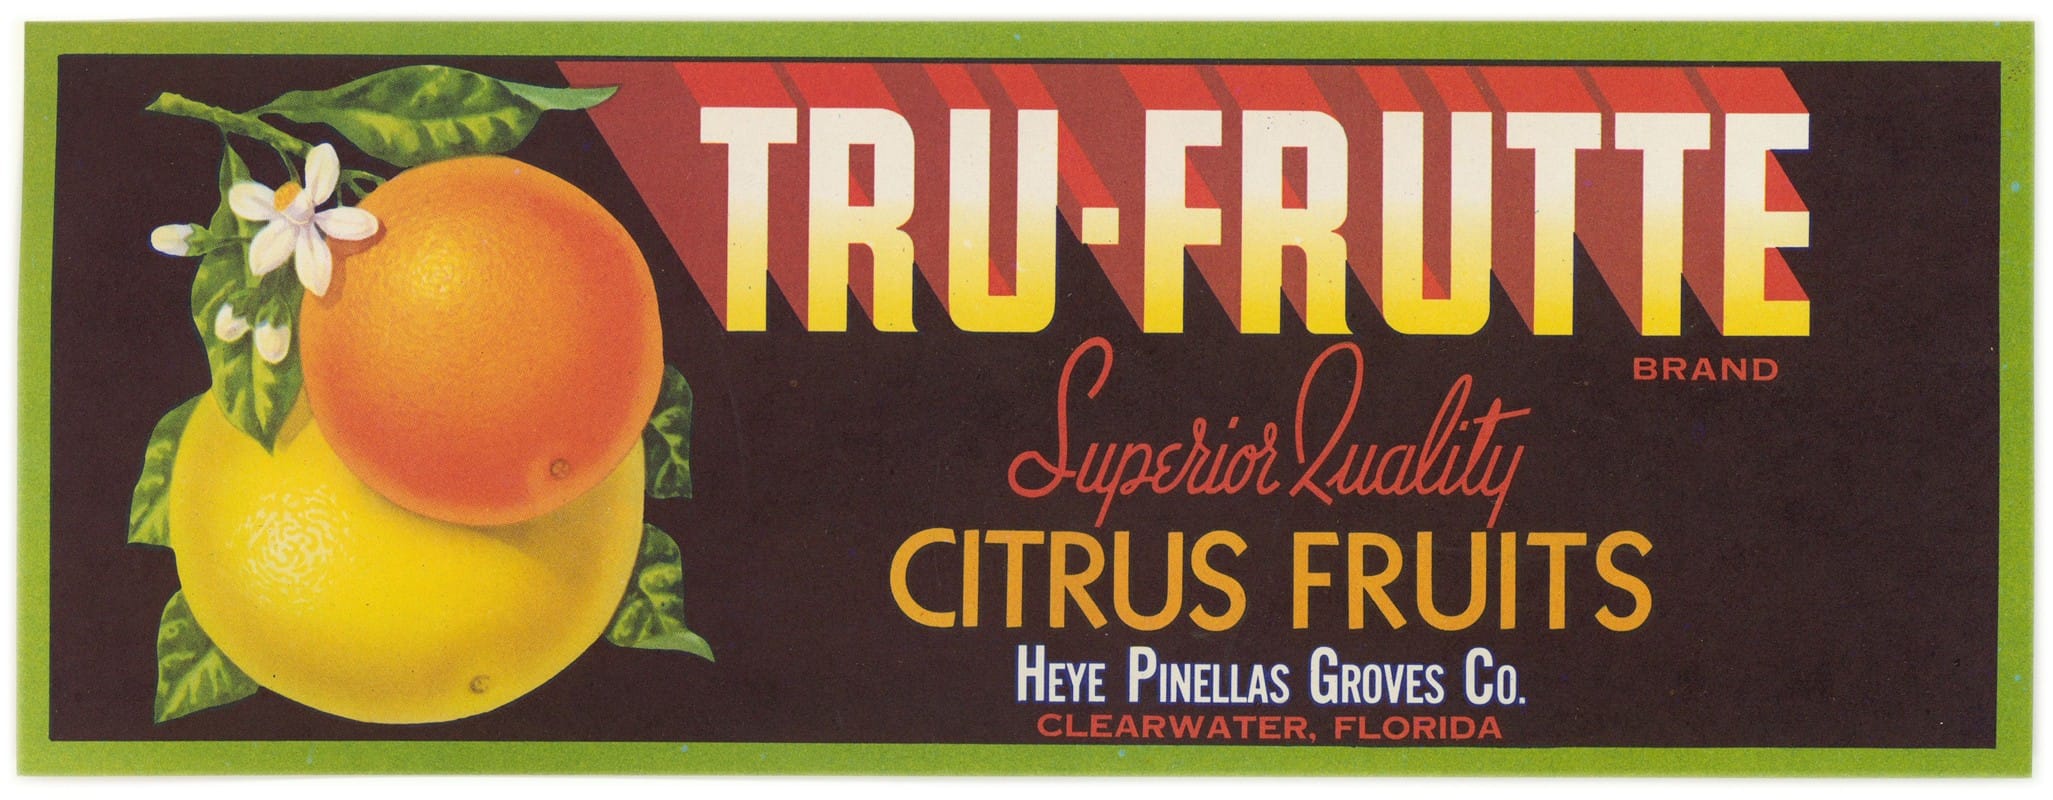 Anonymous - Tru-Frutte Brand Citrus Fruit Label